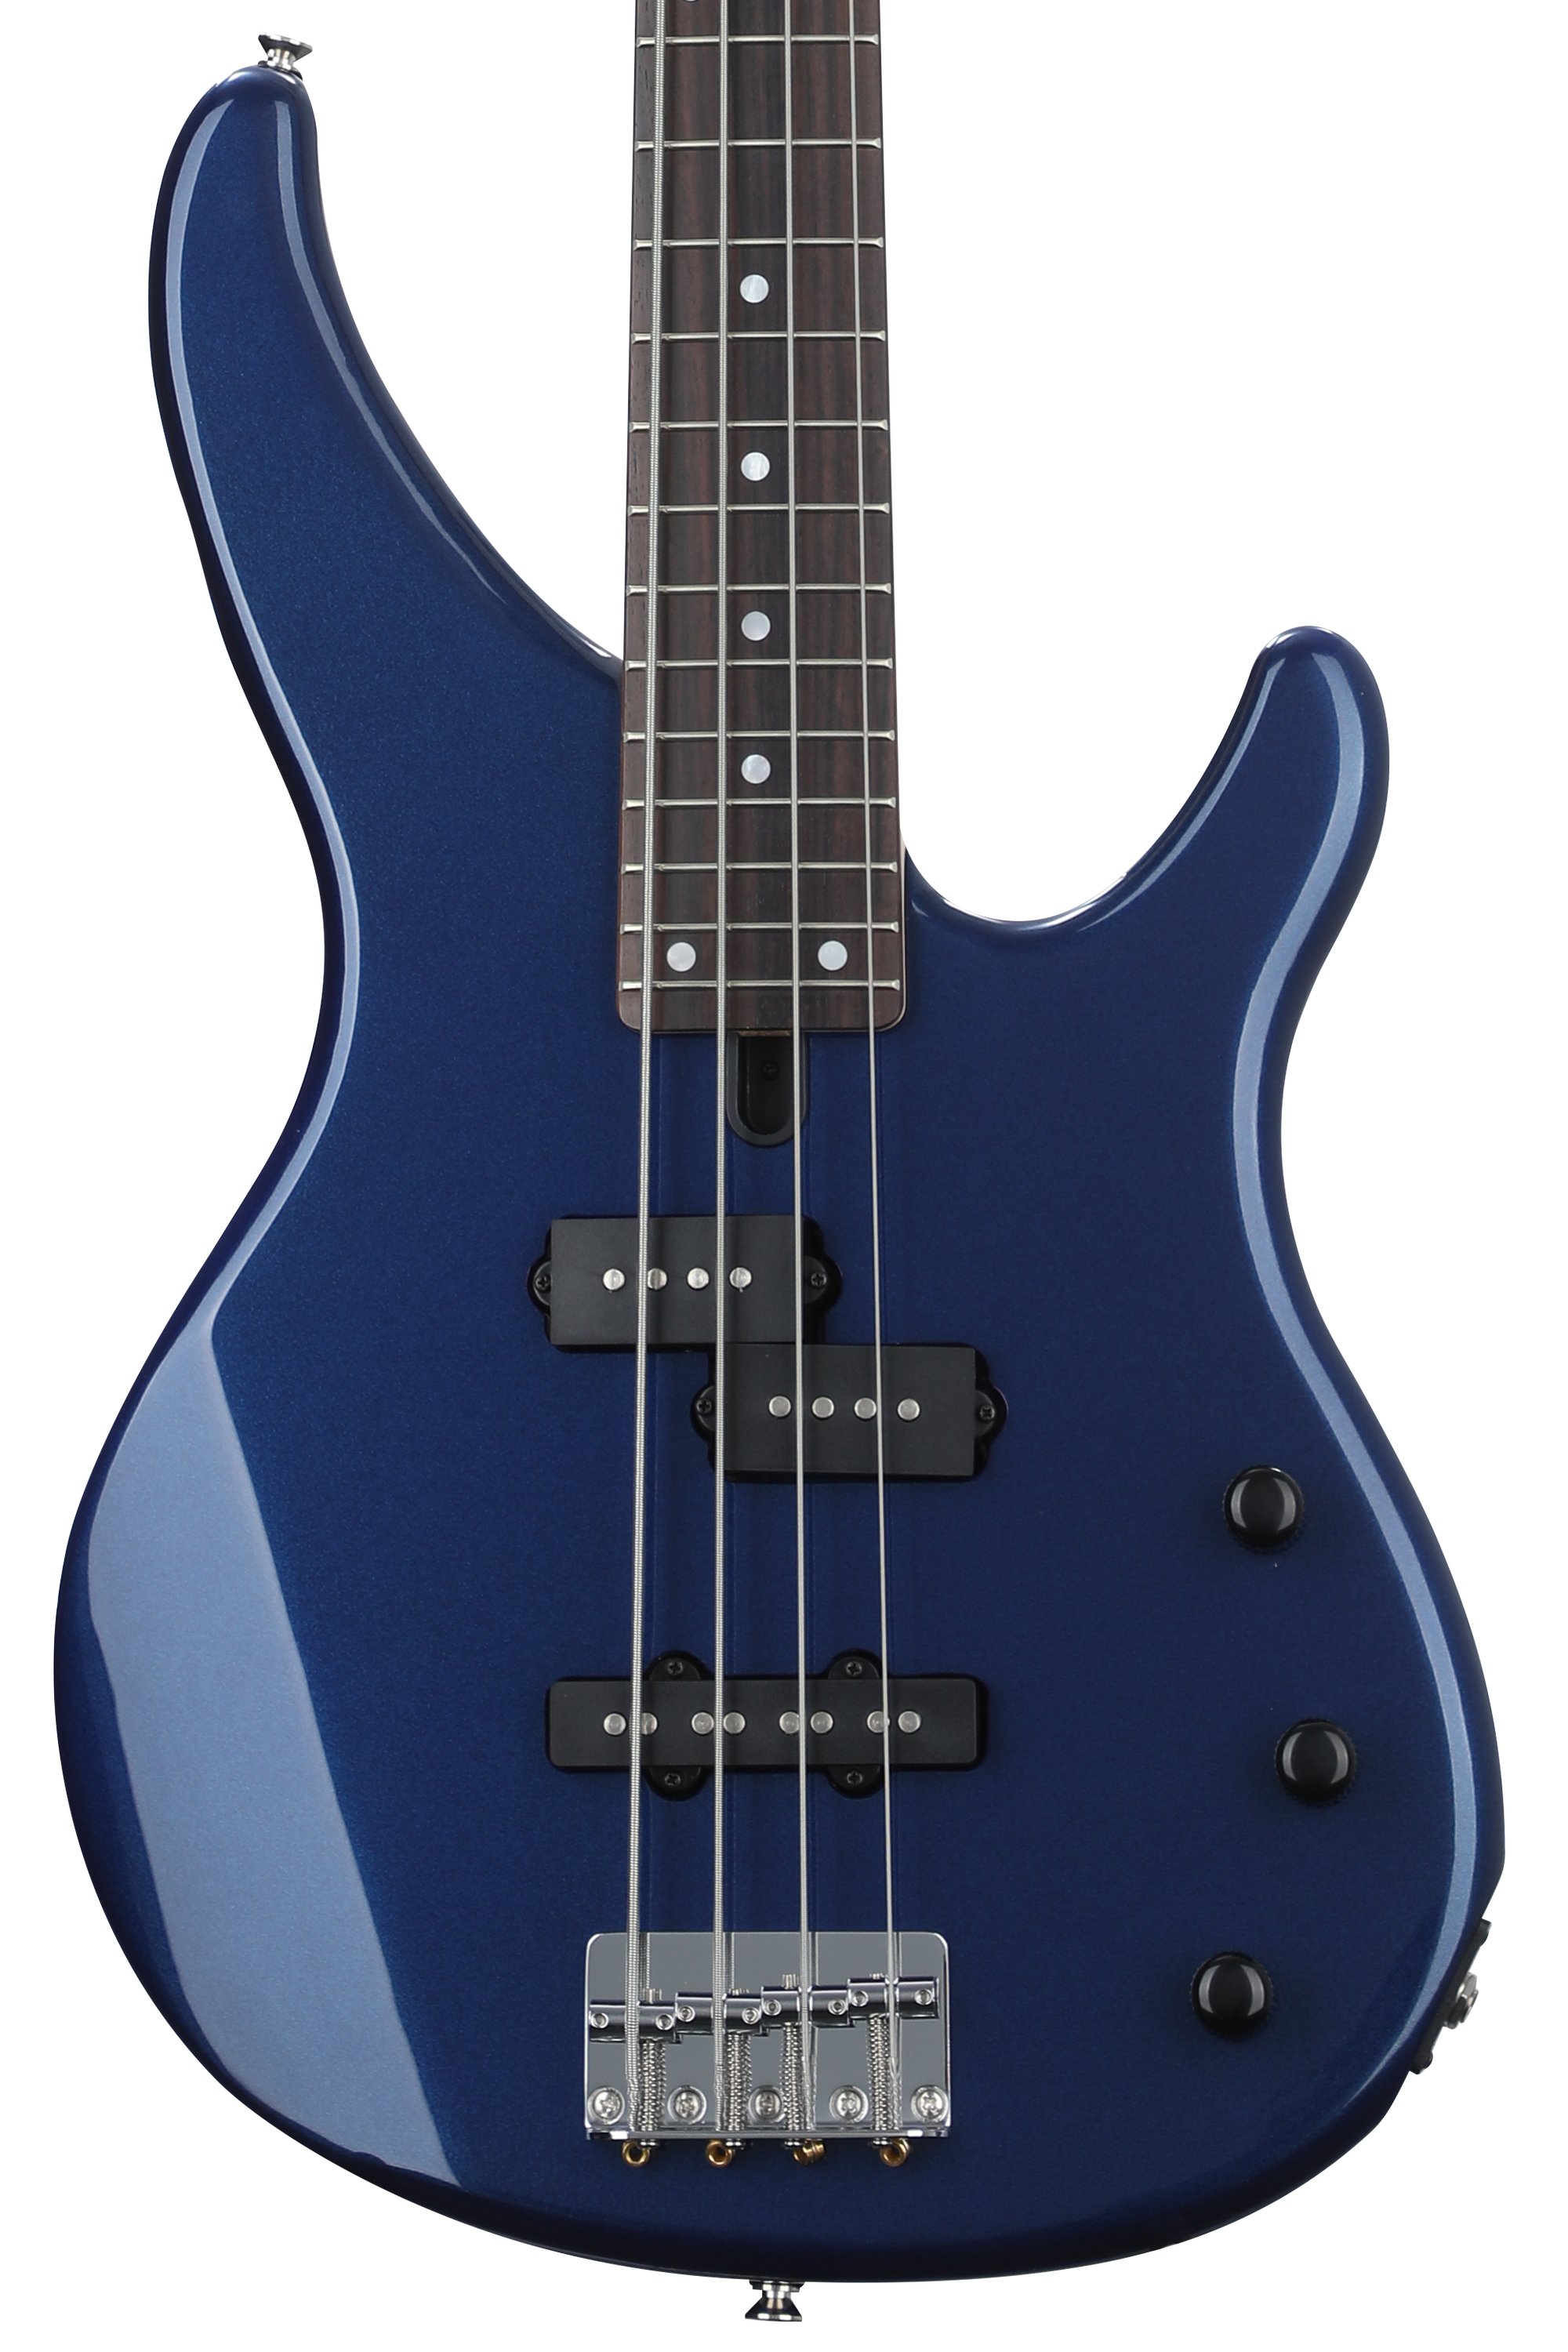 Bundled Item: Yamaha TRBX174 Bass Guitar - Blue Metallic